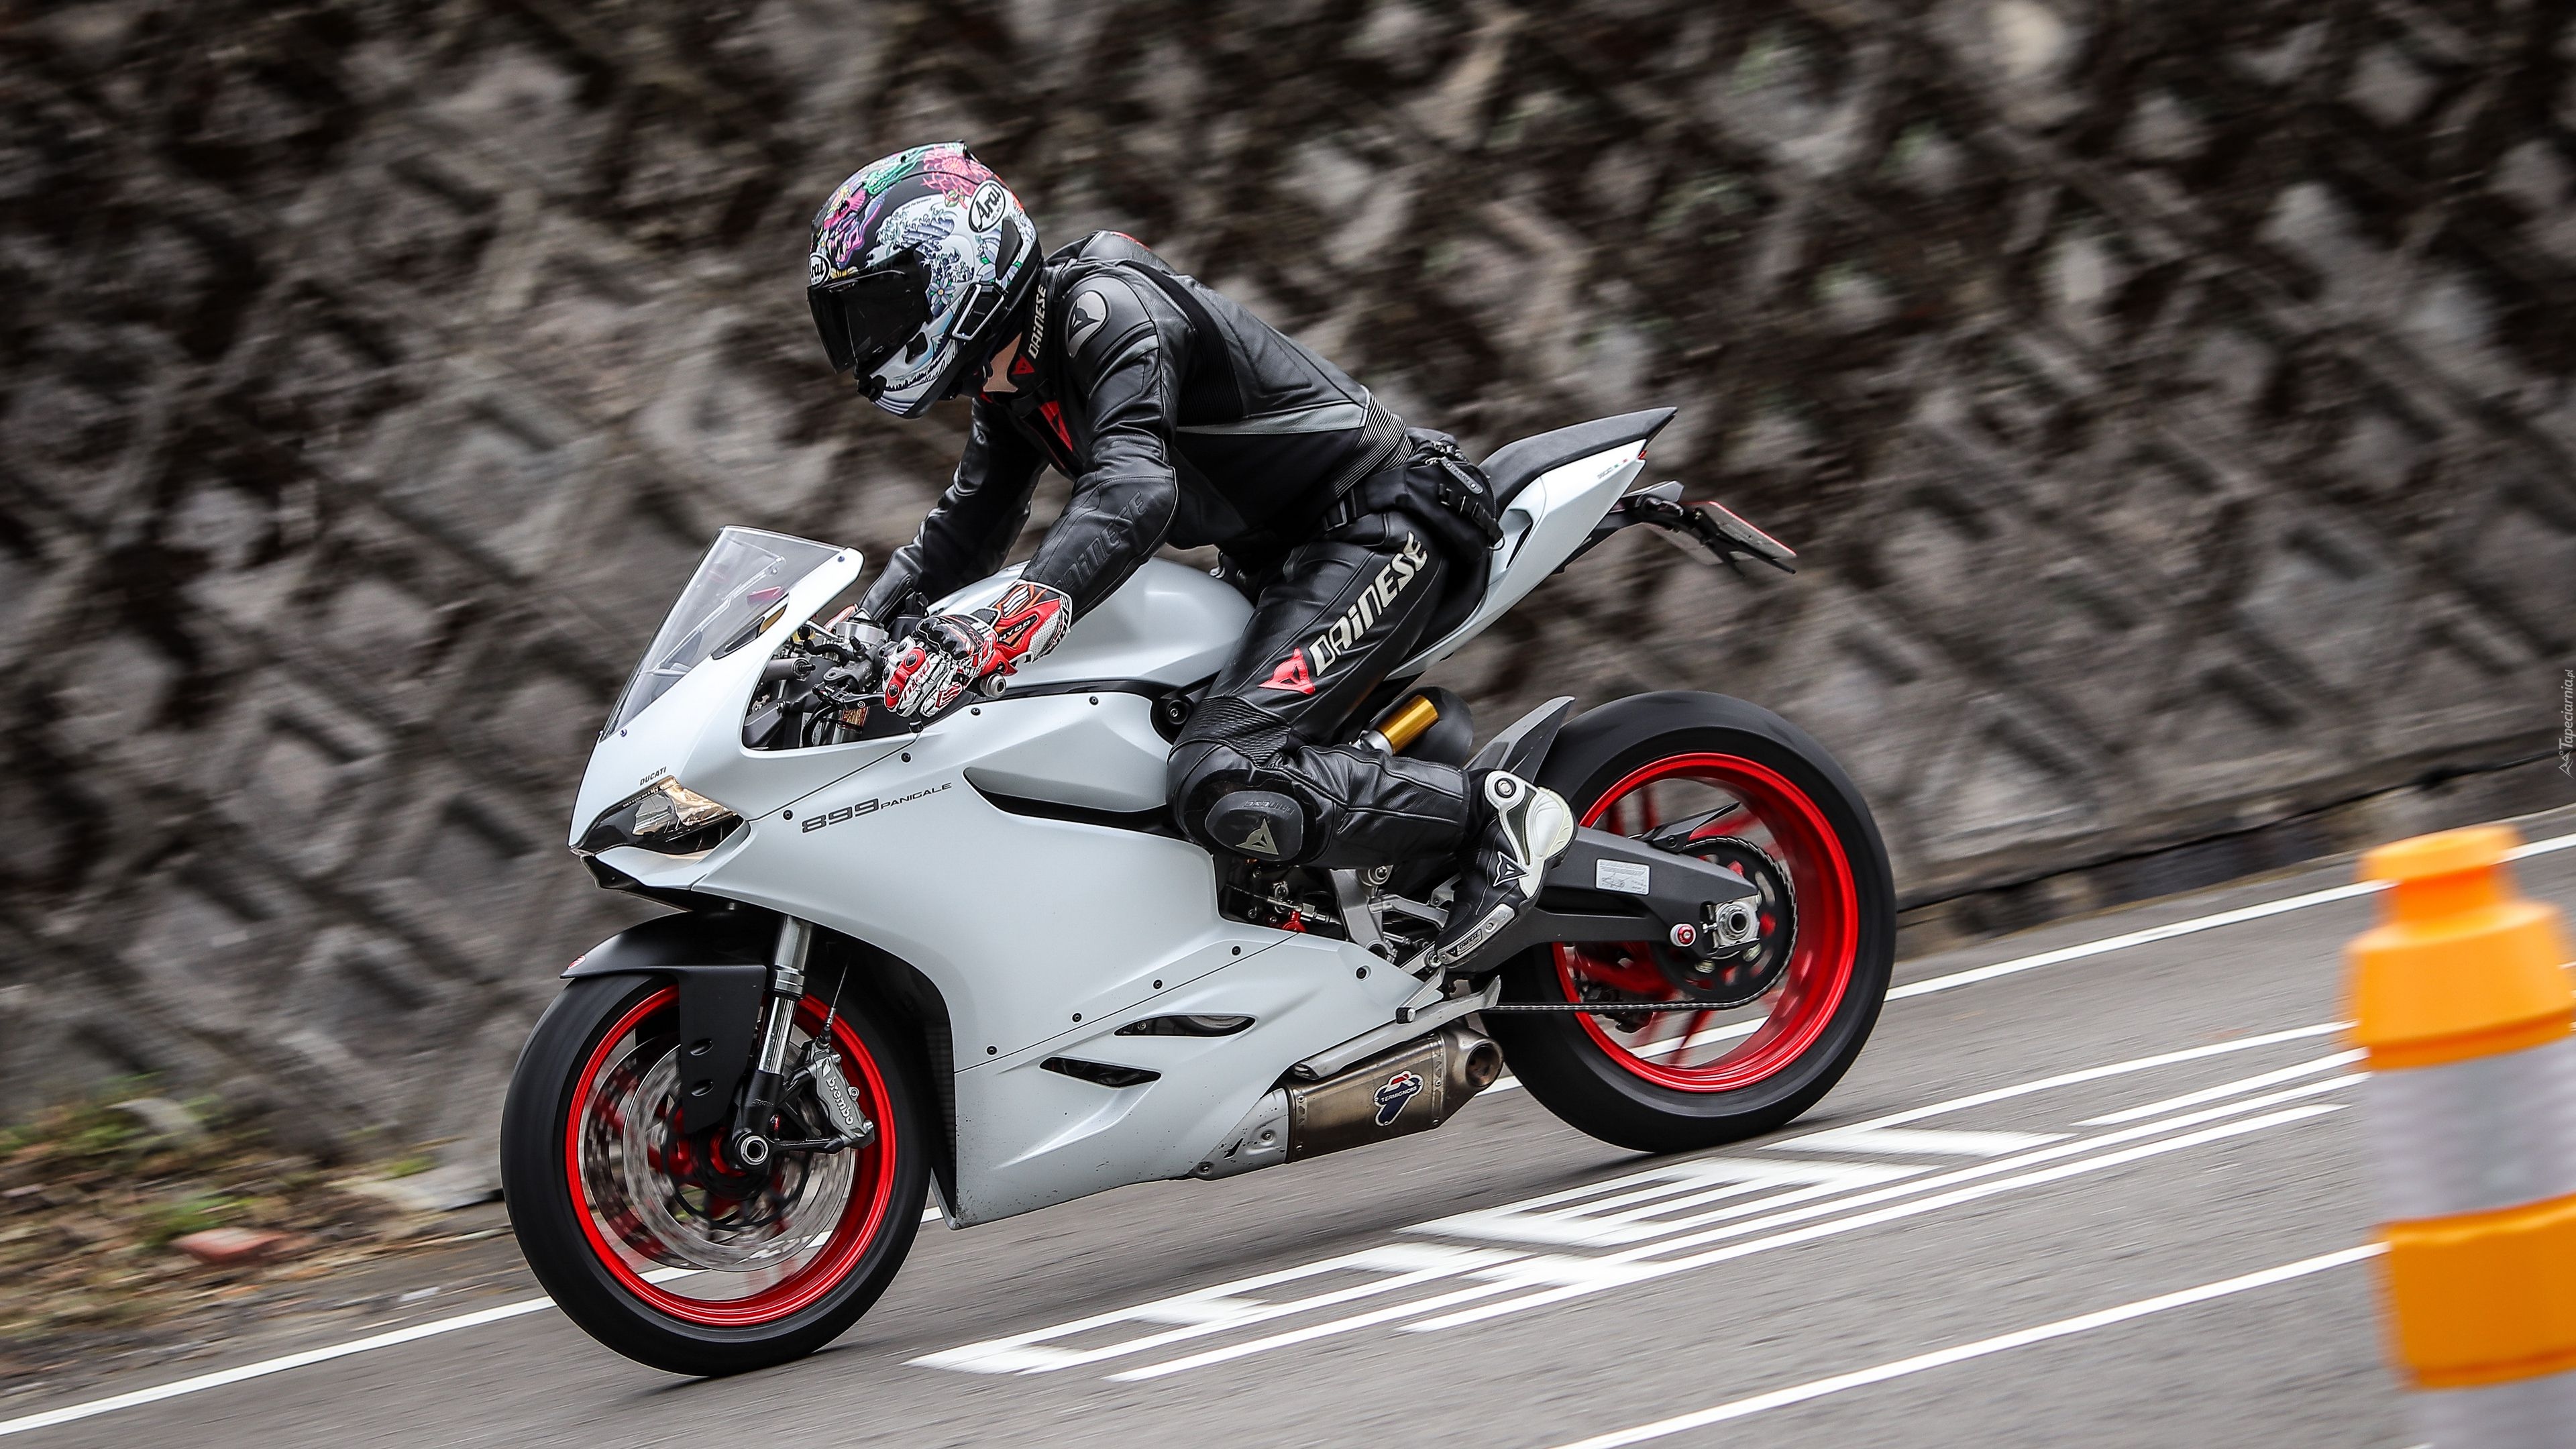 Motocykl, Ducati 899 Panigale